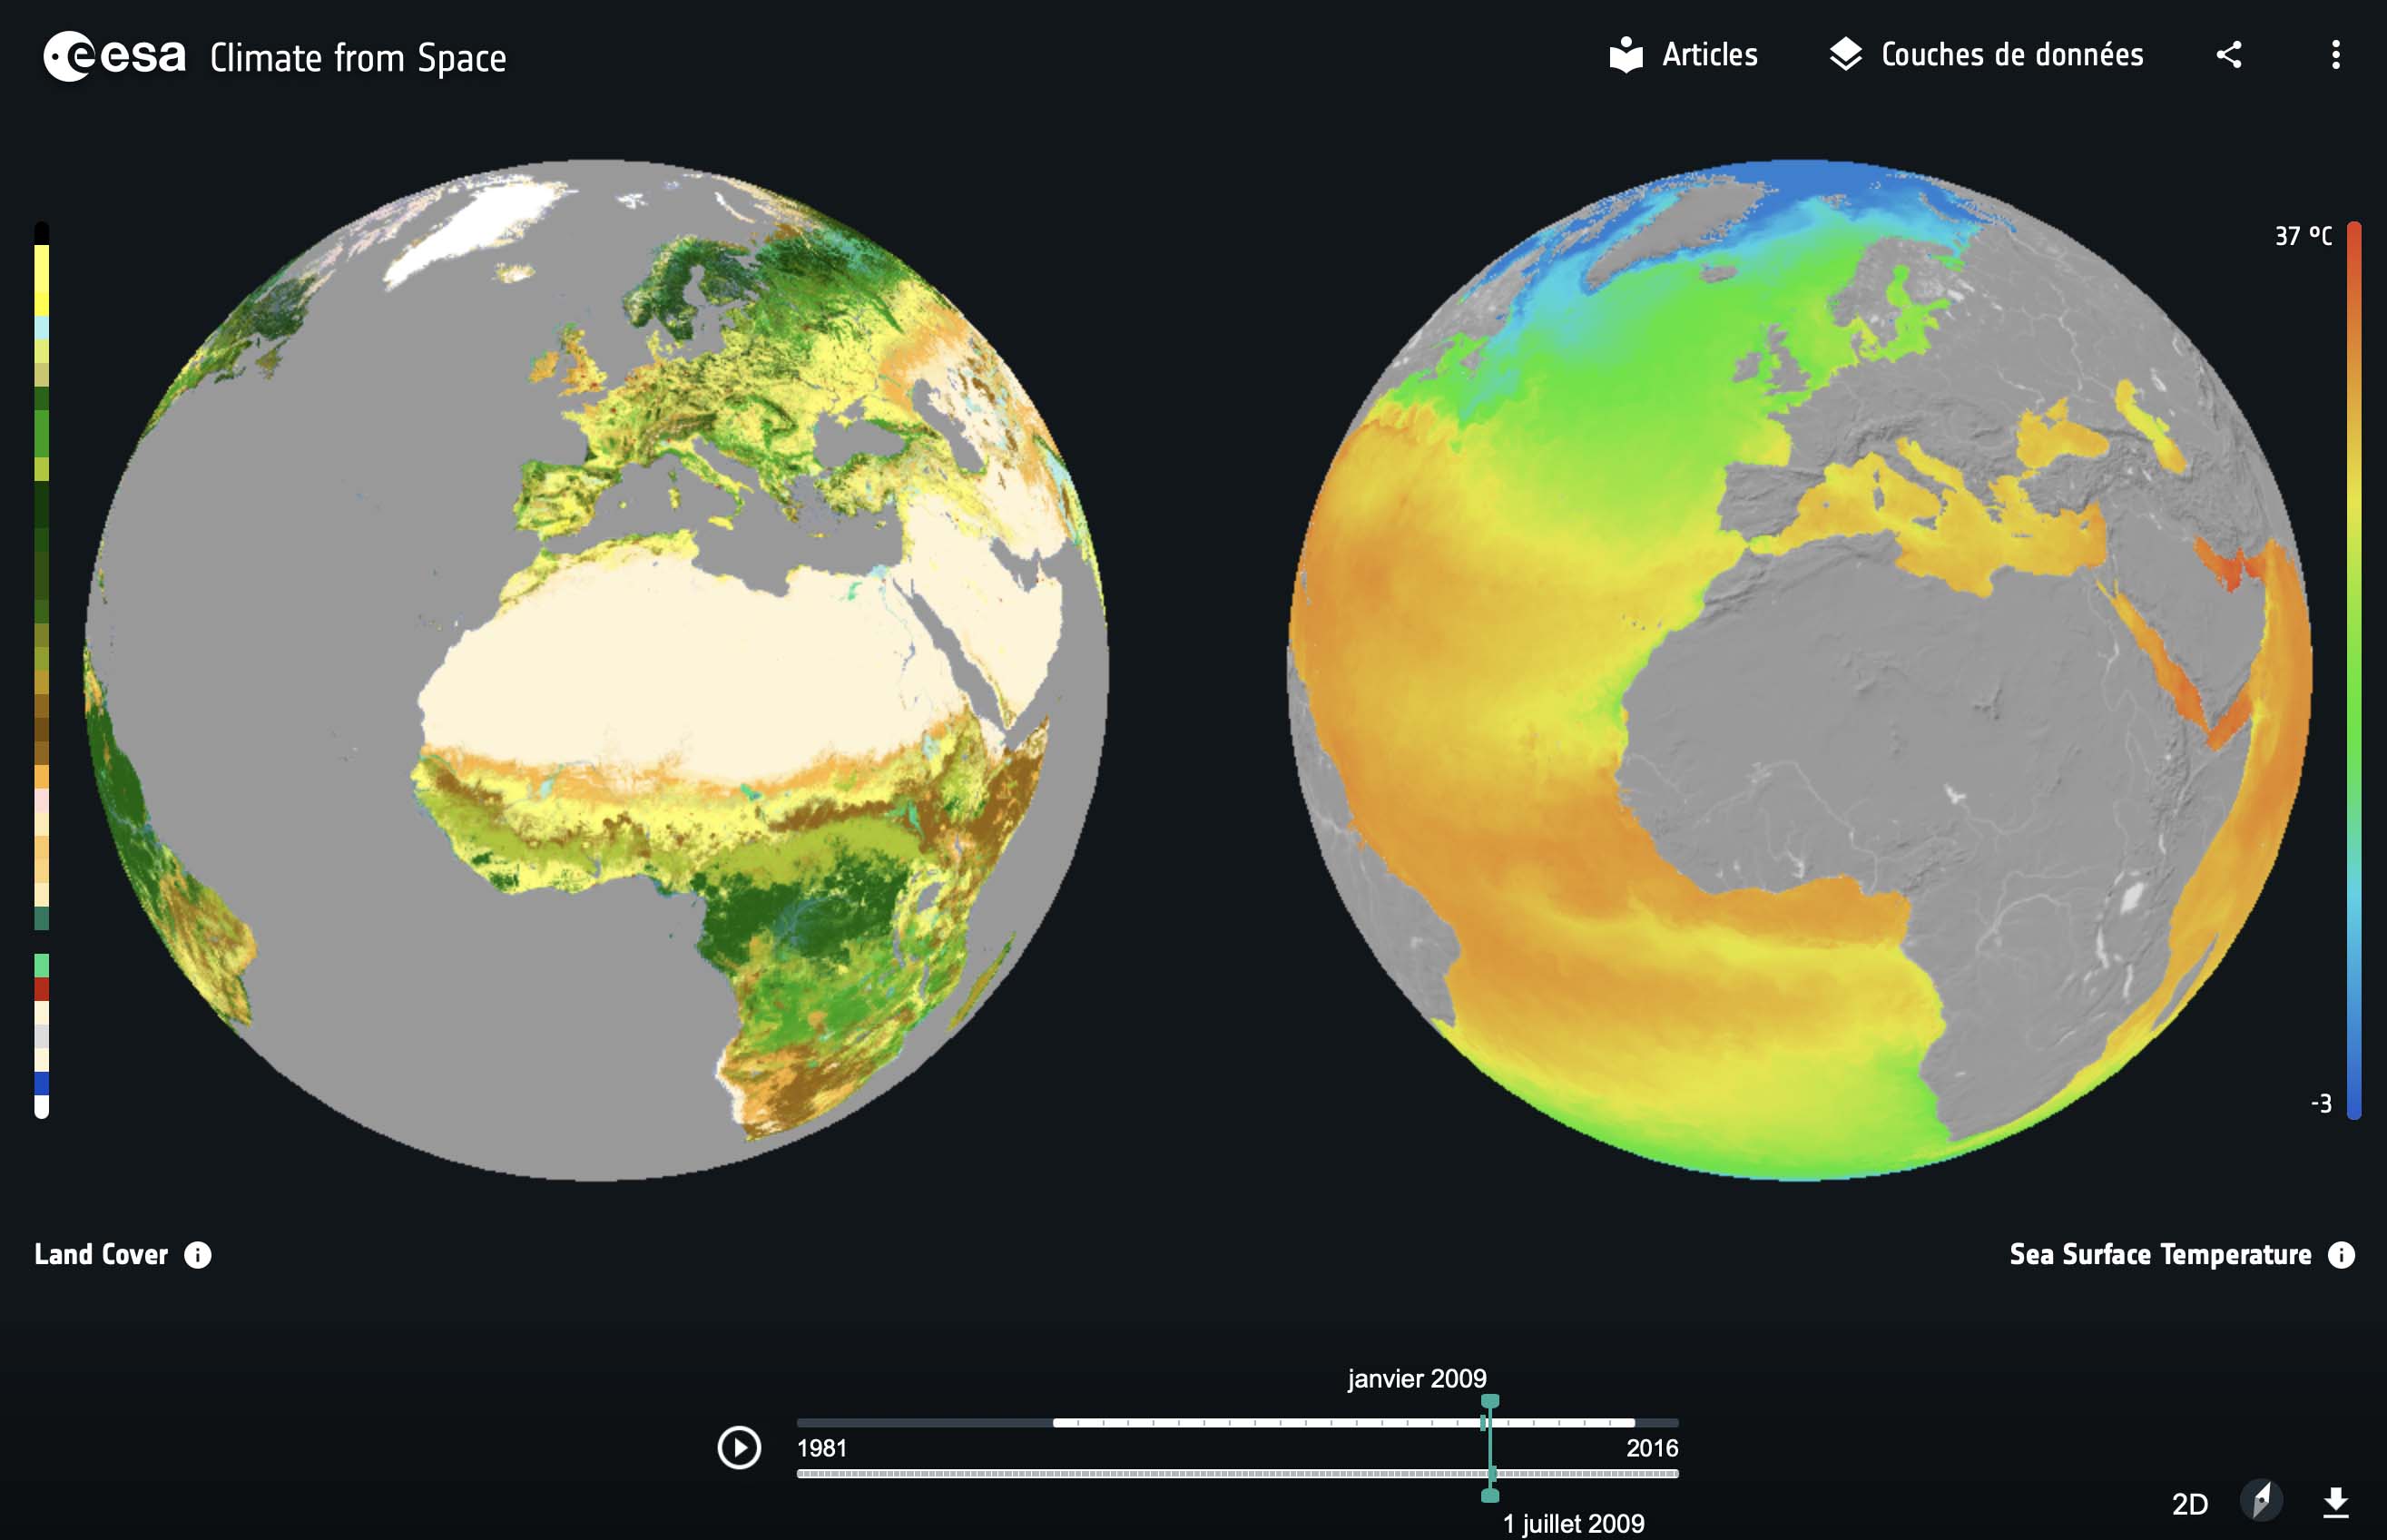 Dans le cadre de l’Initiative pour le Changement Climatique de l’ESA, organisateur de cette 6ème séance internationale, son Climate from Space website permet de visualiser et comparer différentes couches de données, comme ici la couverture terrestre à gauche et les températures océaniques à droite.